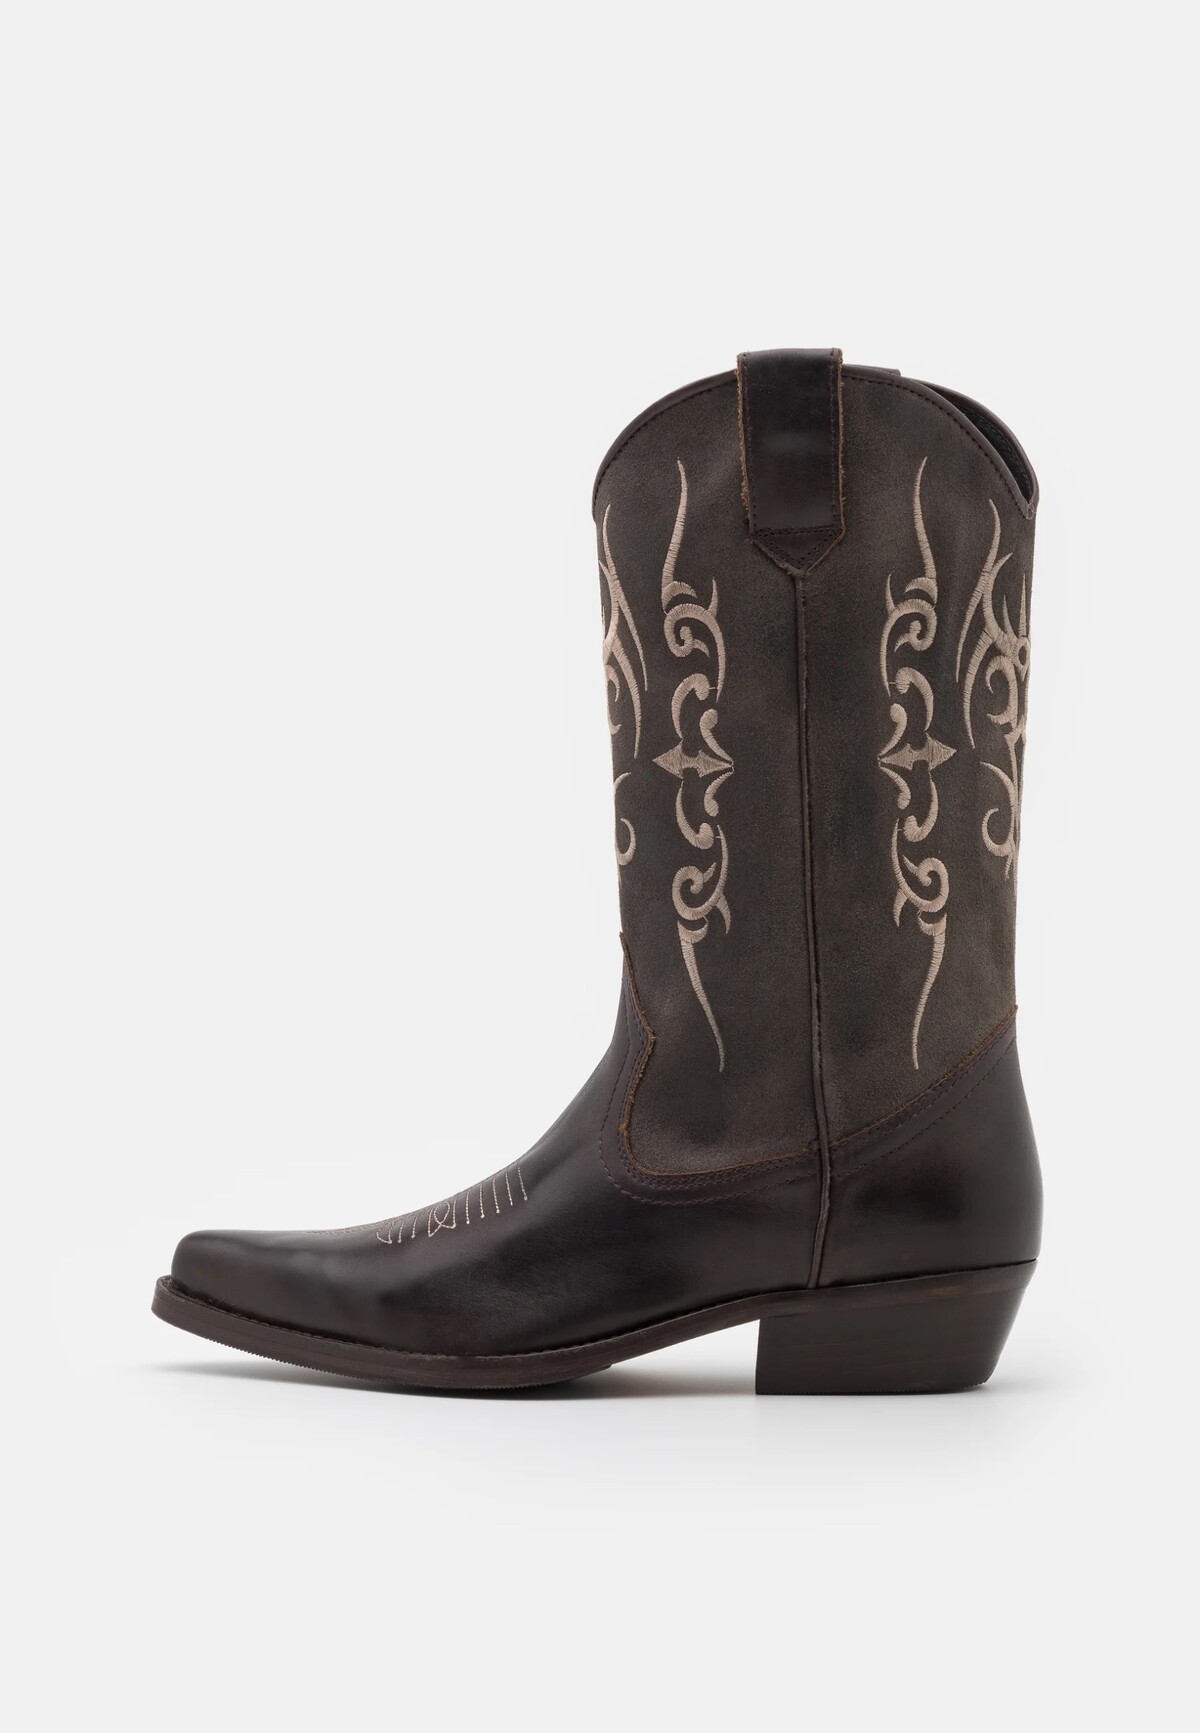 Cowboy boots.